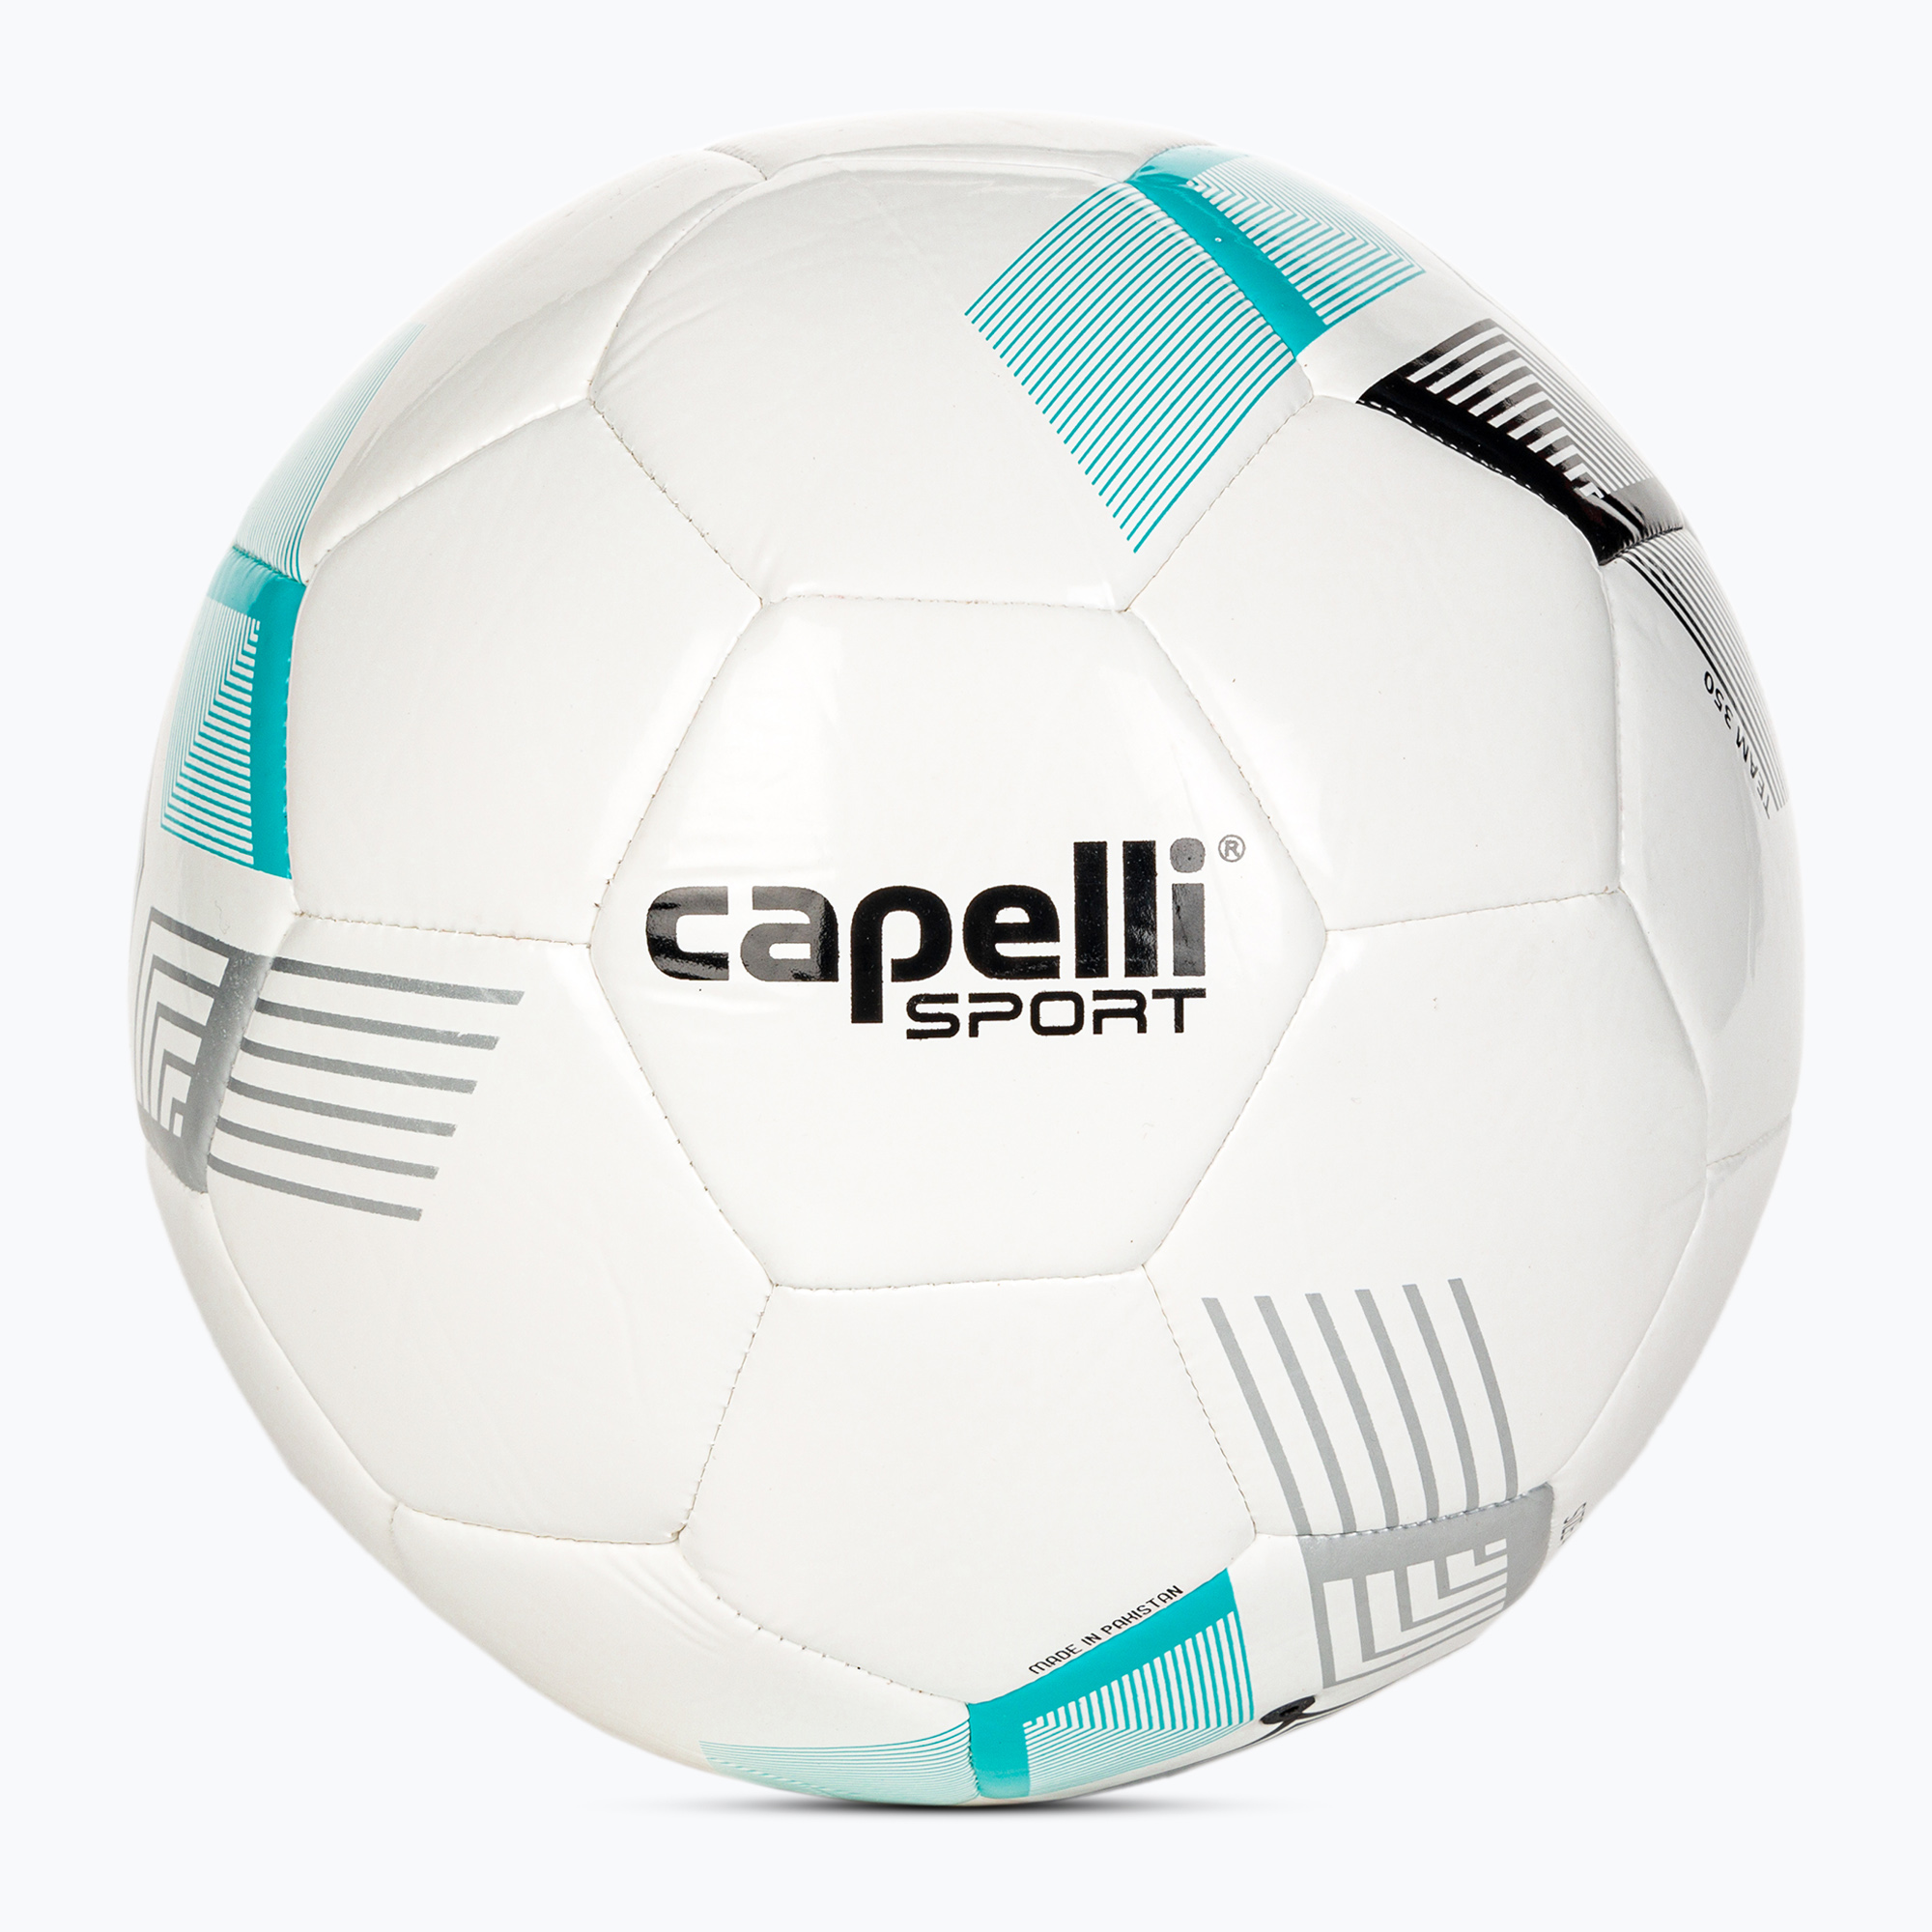 Capelli Tribeca Metro Team futbal AGE-5884 veľkosť 4